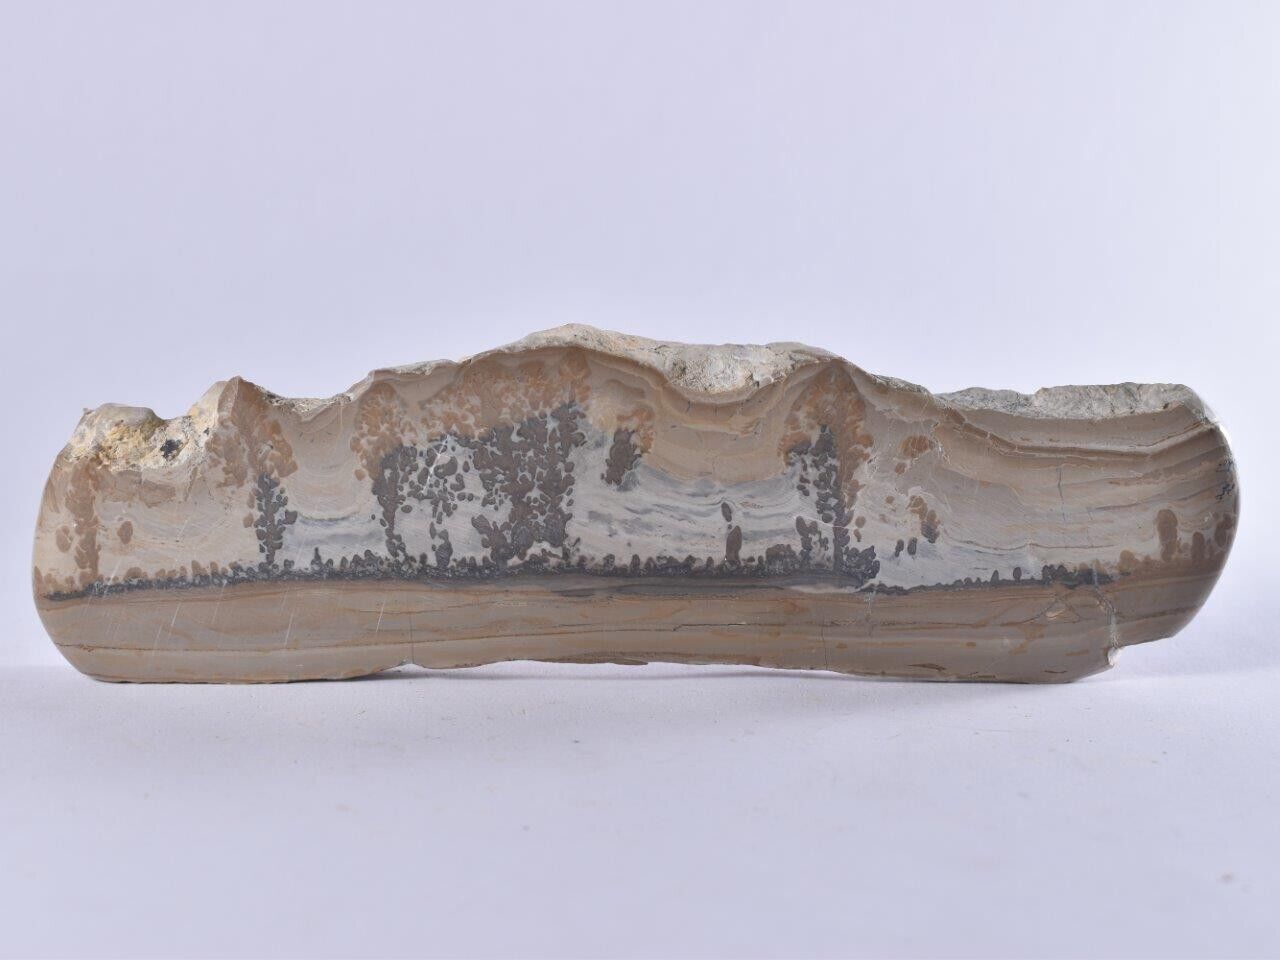 Cotham Marble (Fossilised Algae) - Stromatolite - Polished Slab Bristol UK 182mm